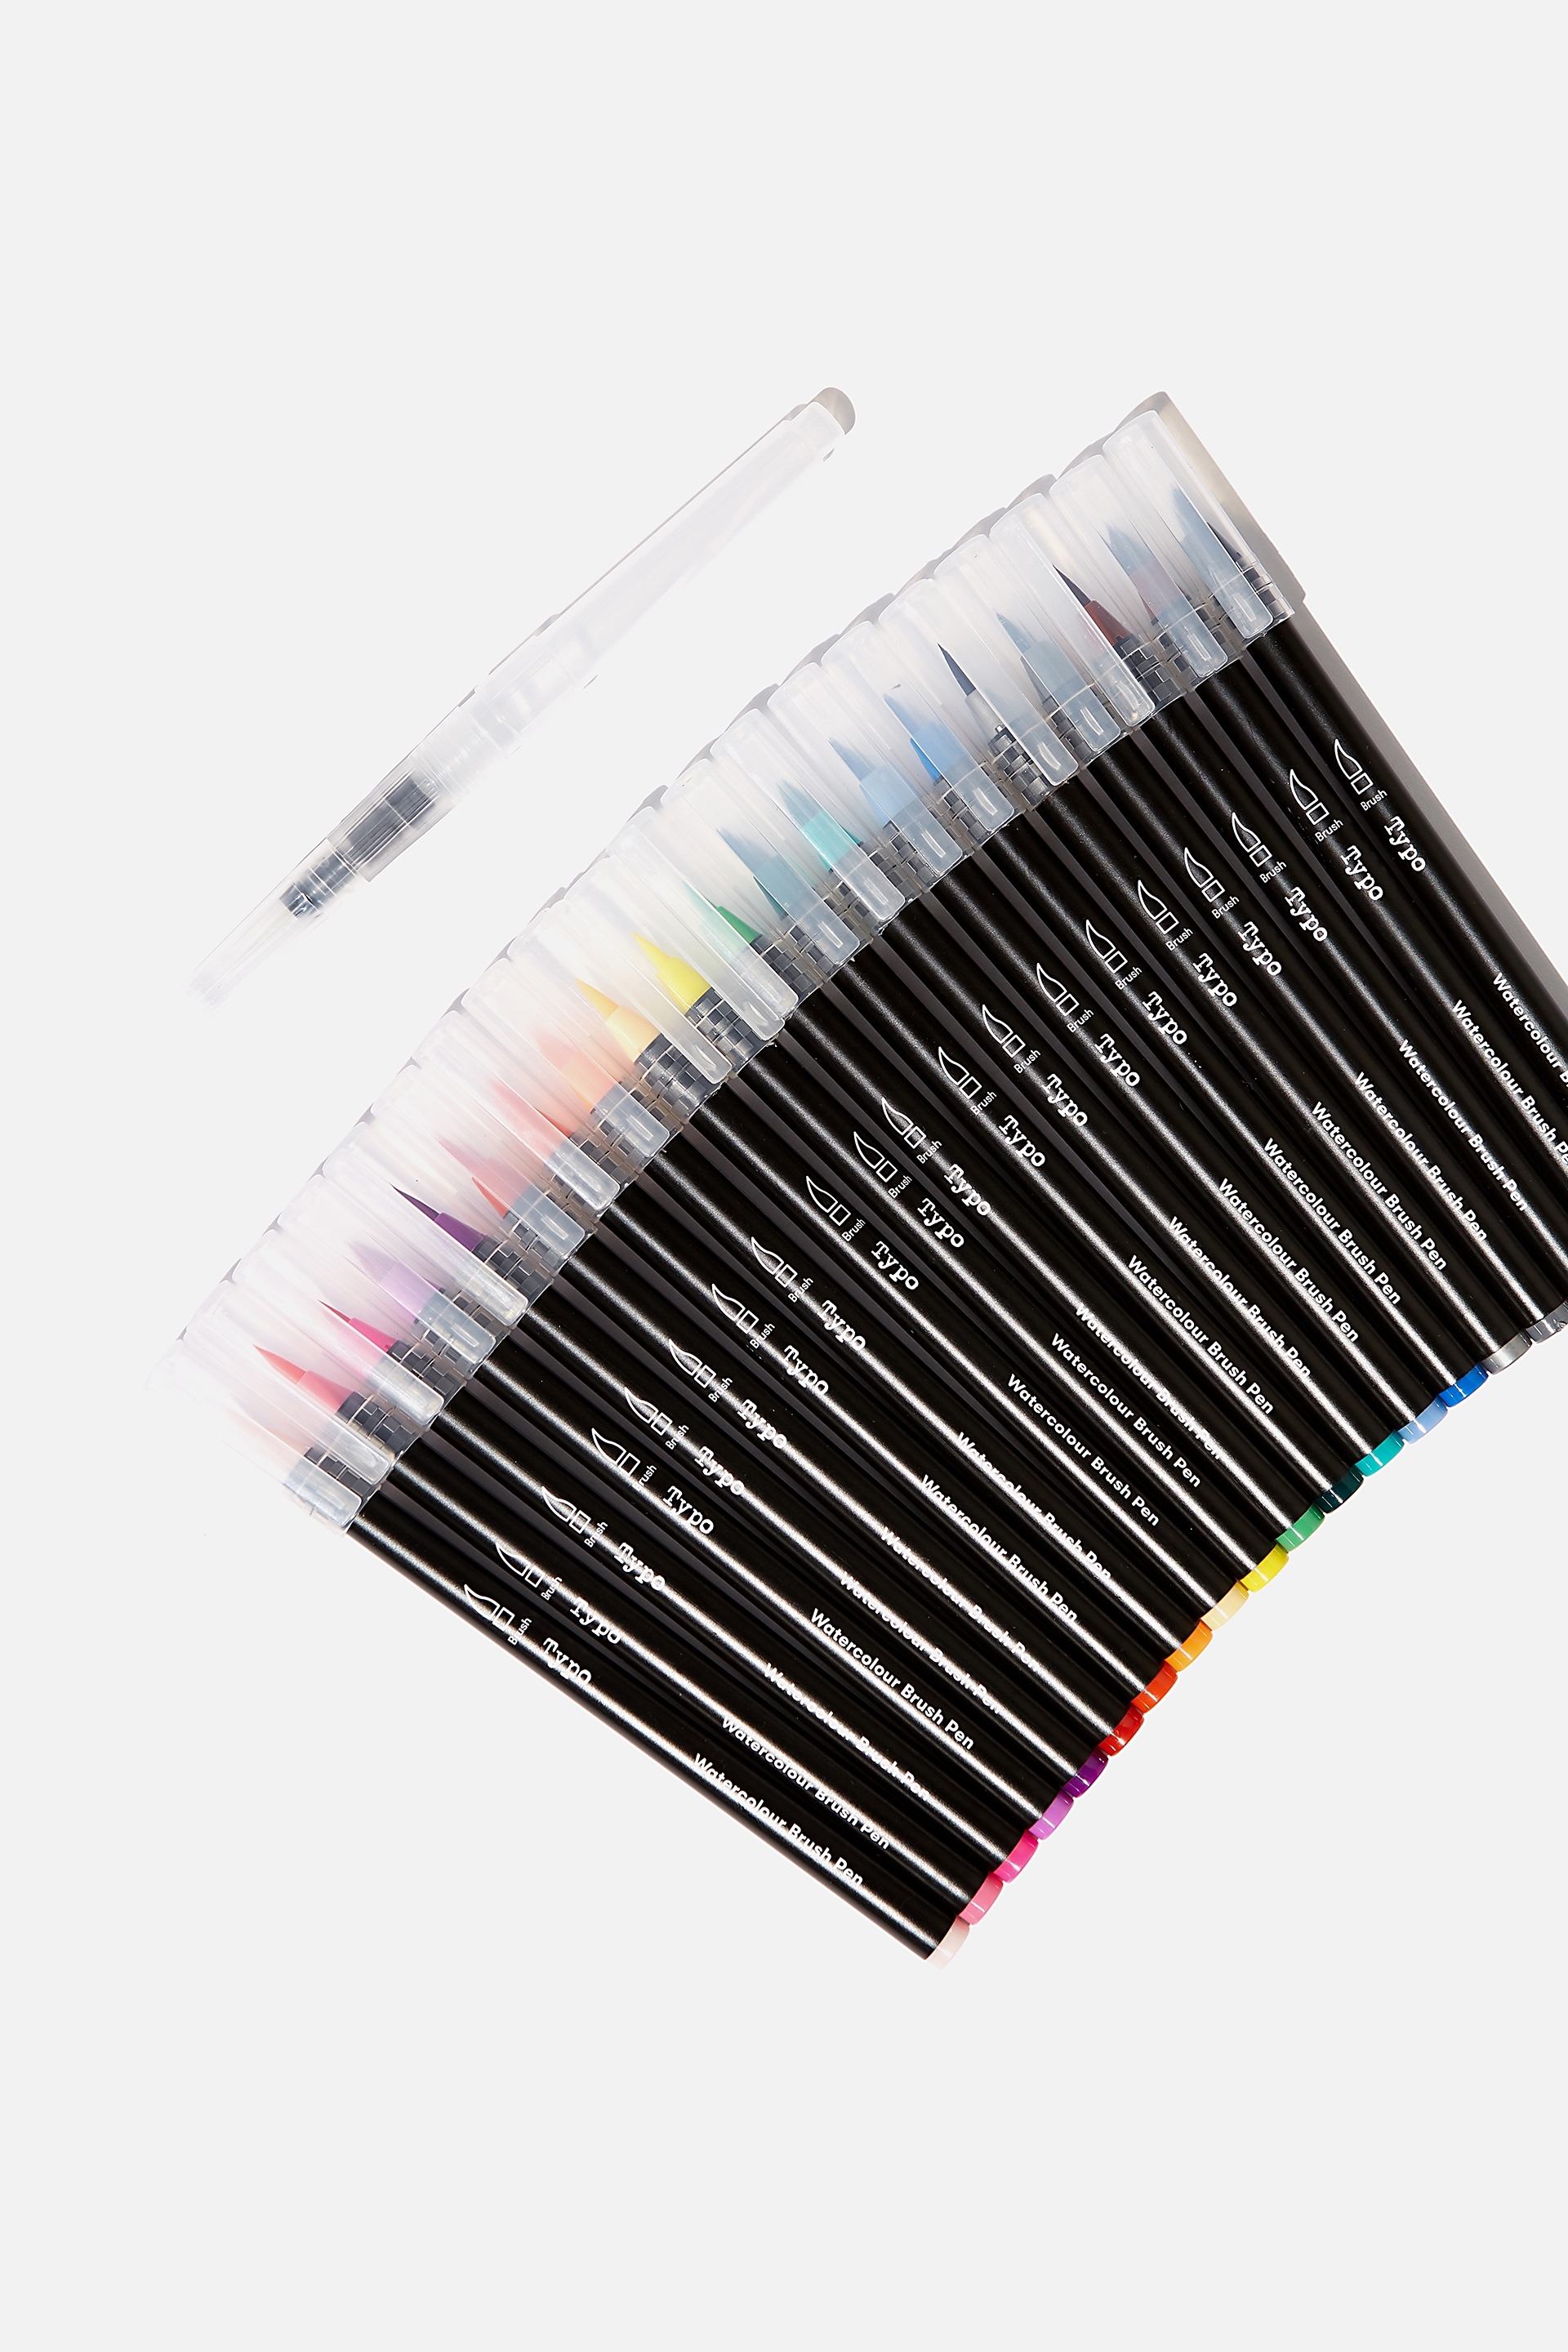 Typo - Watercolour Brush Pen 20Pk - Multi